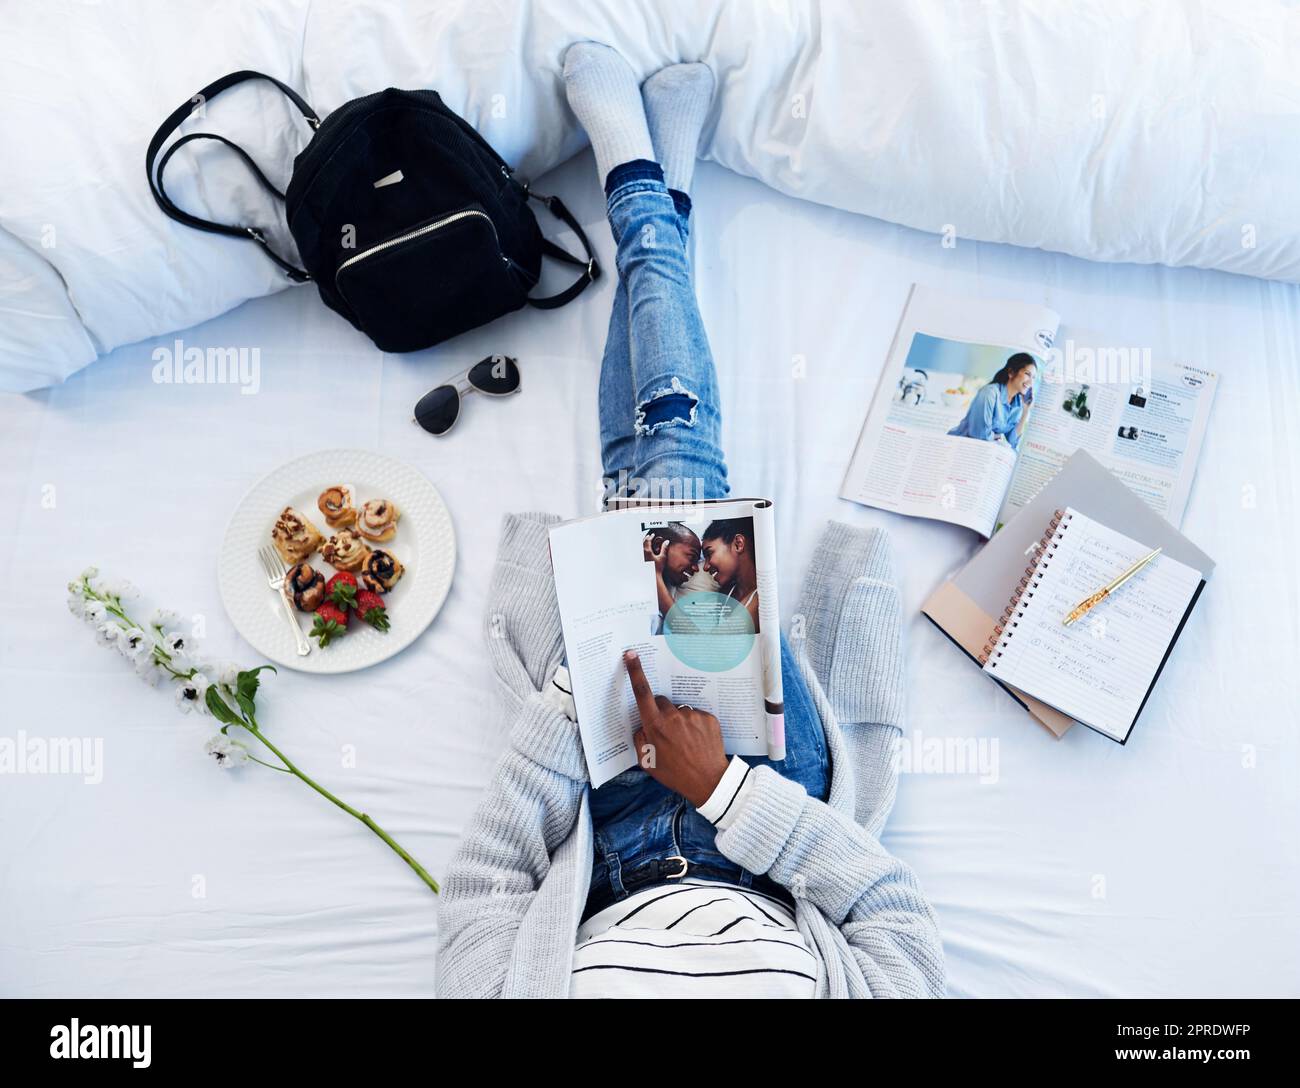 Bloggerin zu sein, ist ihr Hobby geworden. Aufnahmen aus dem Blickwinkel einer unbekannten Frau, die eine Zeitschrift liest und zu Hause auf ihrem Bett frühstückt. Stockfoto